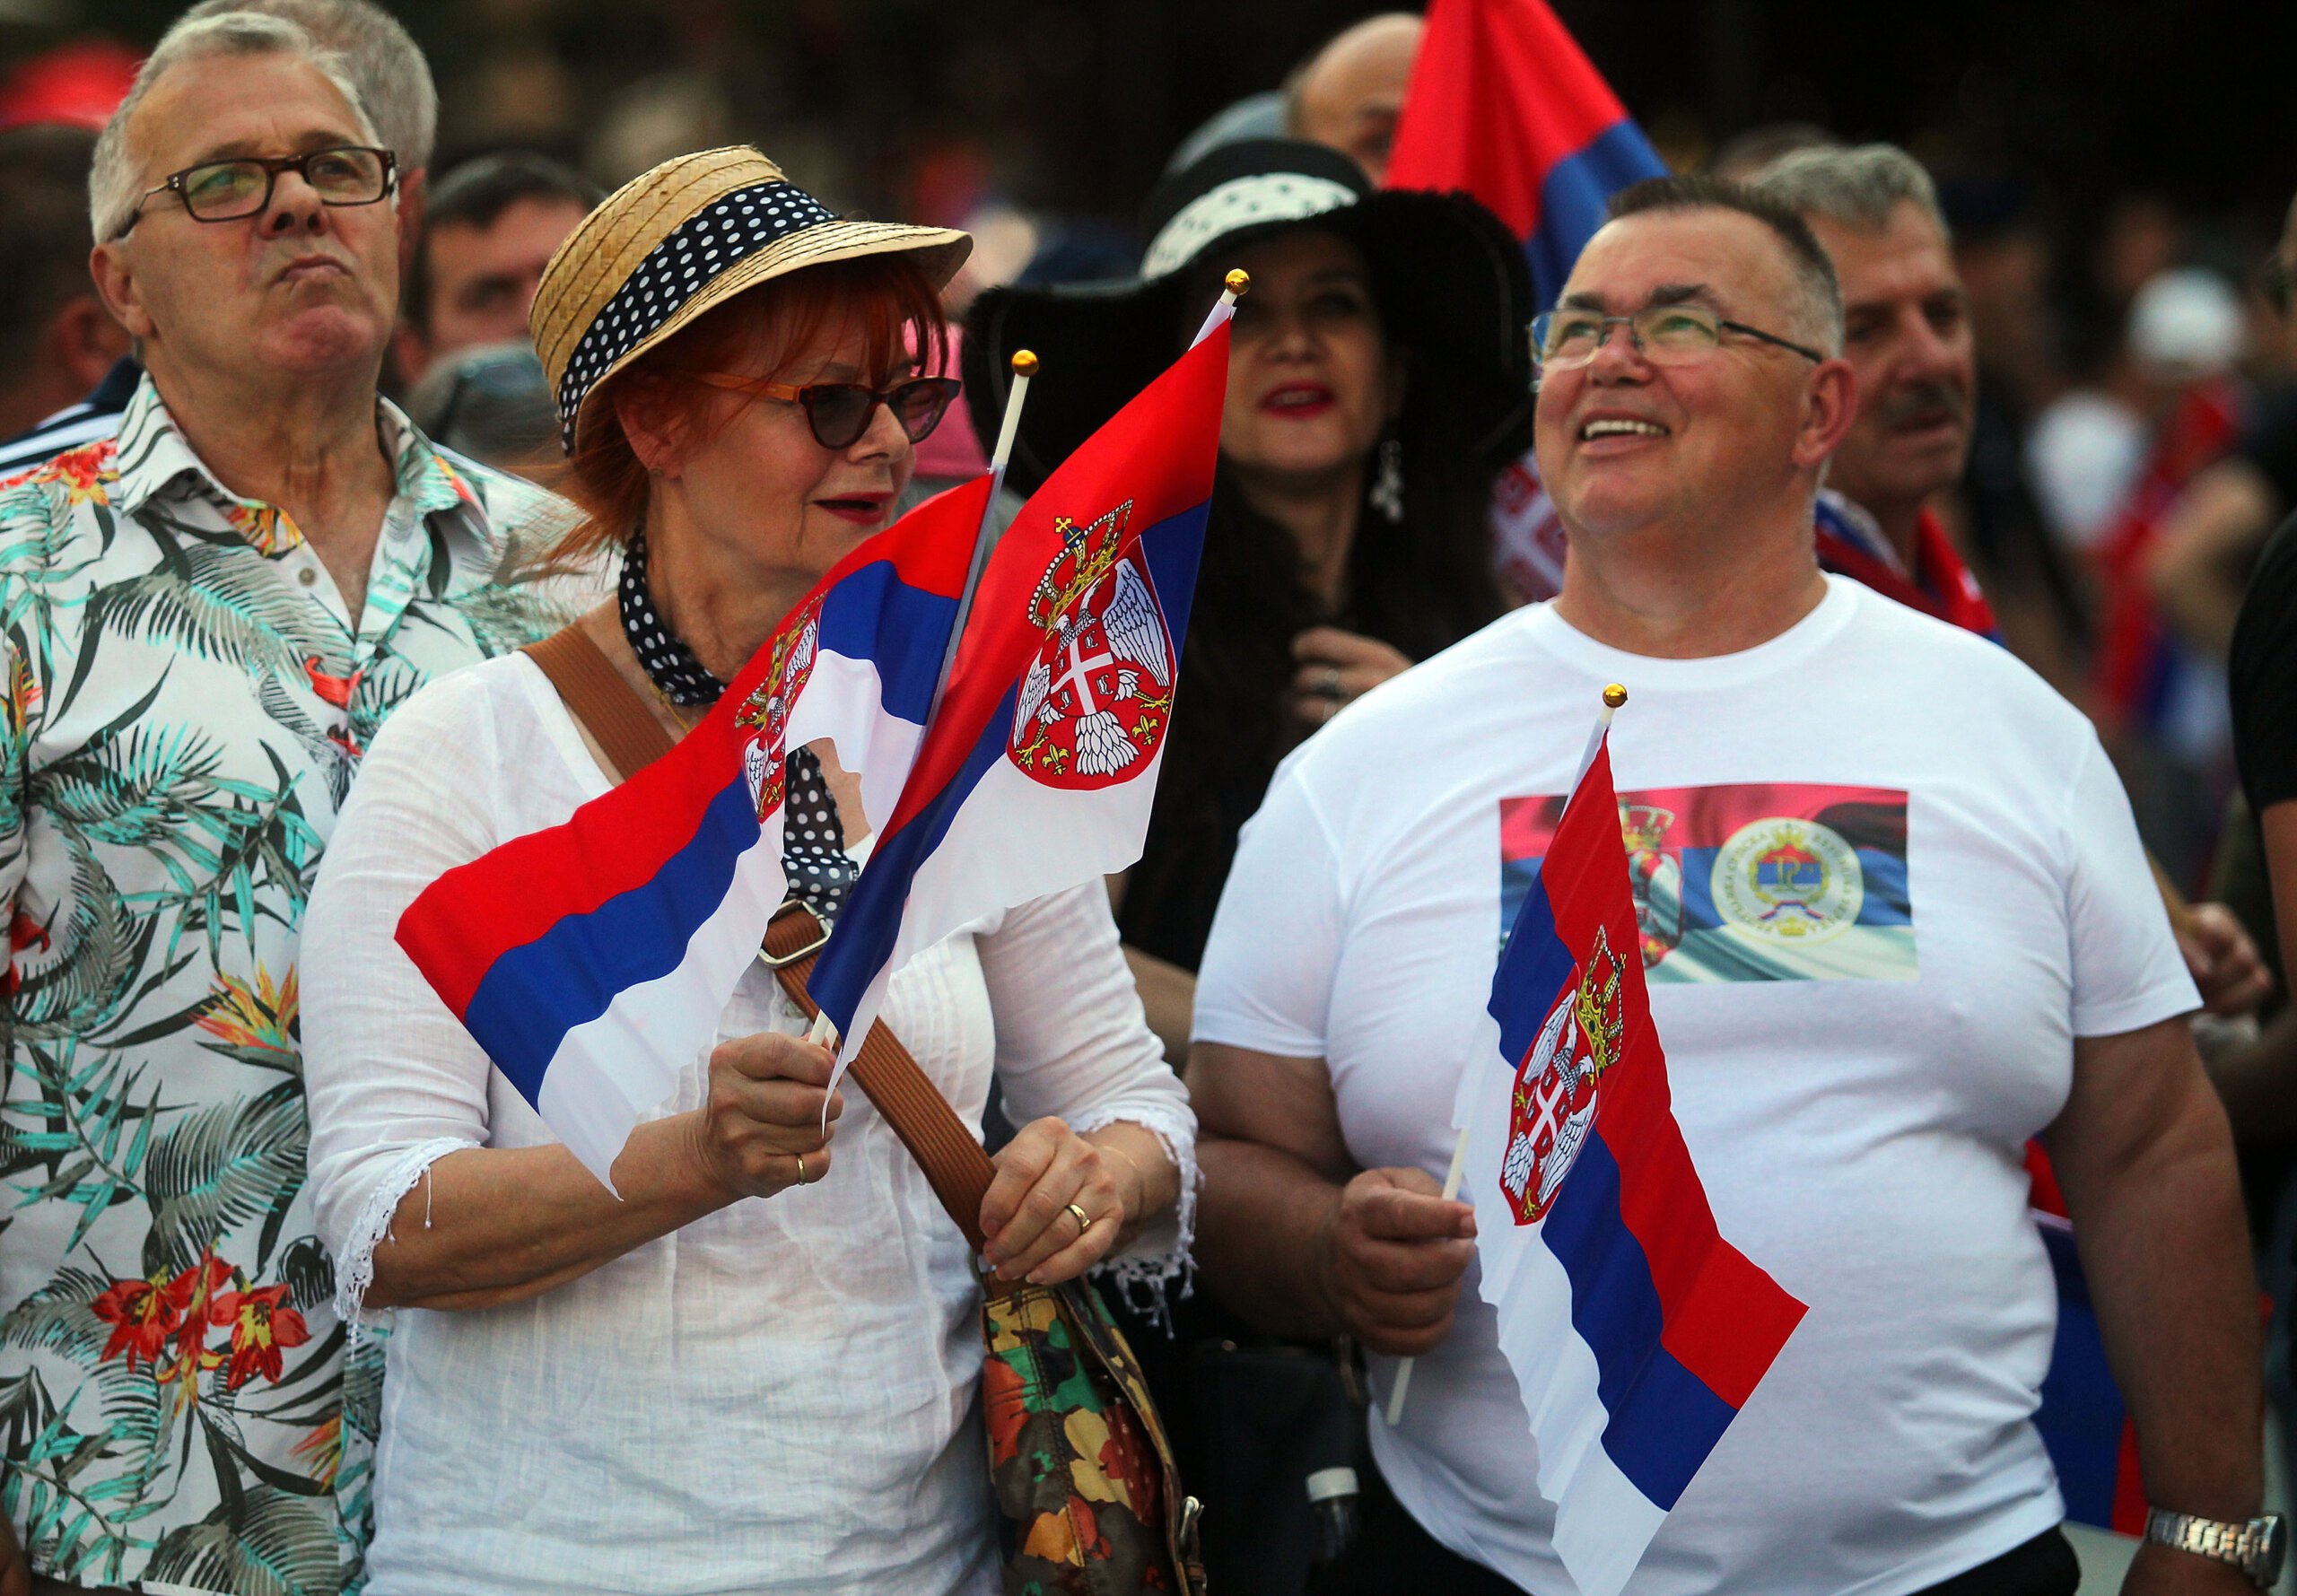 (FOTO) Kako je izgledala manifestacija "Jedan narod, jedan sabor - Srbija i Srpska" na Trgu republike u fotografijama? 22